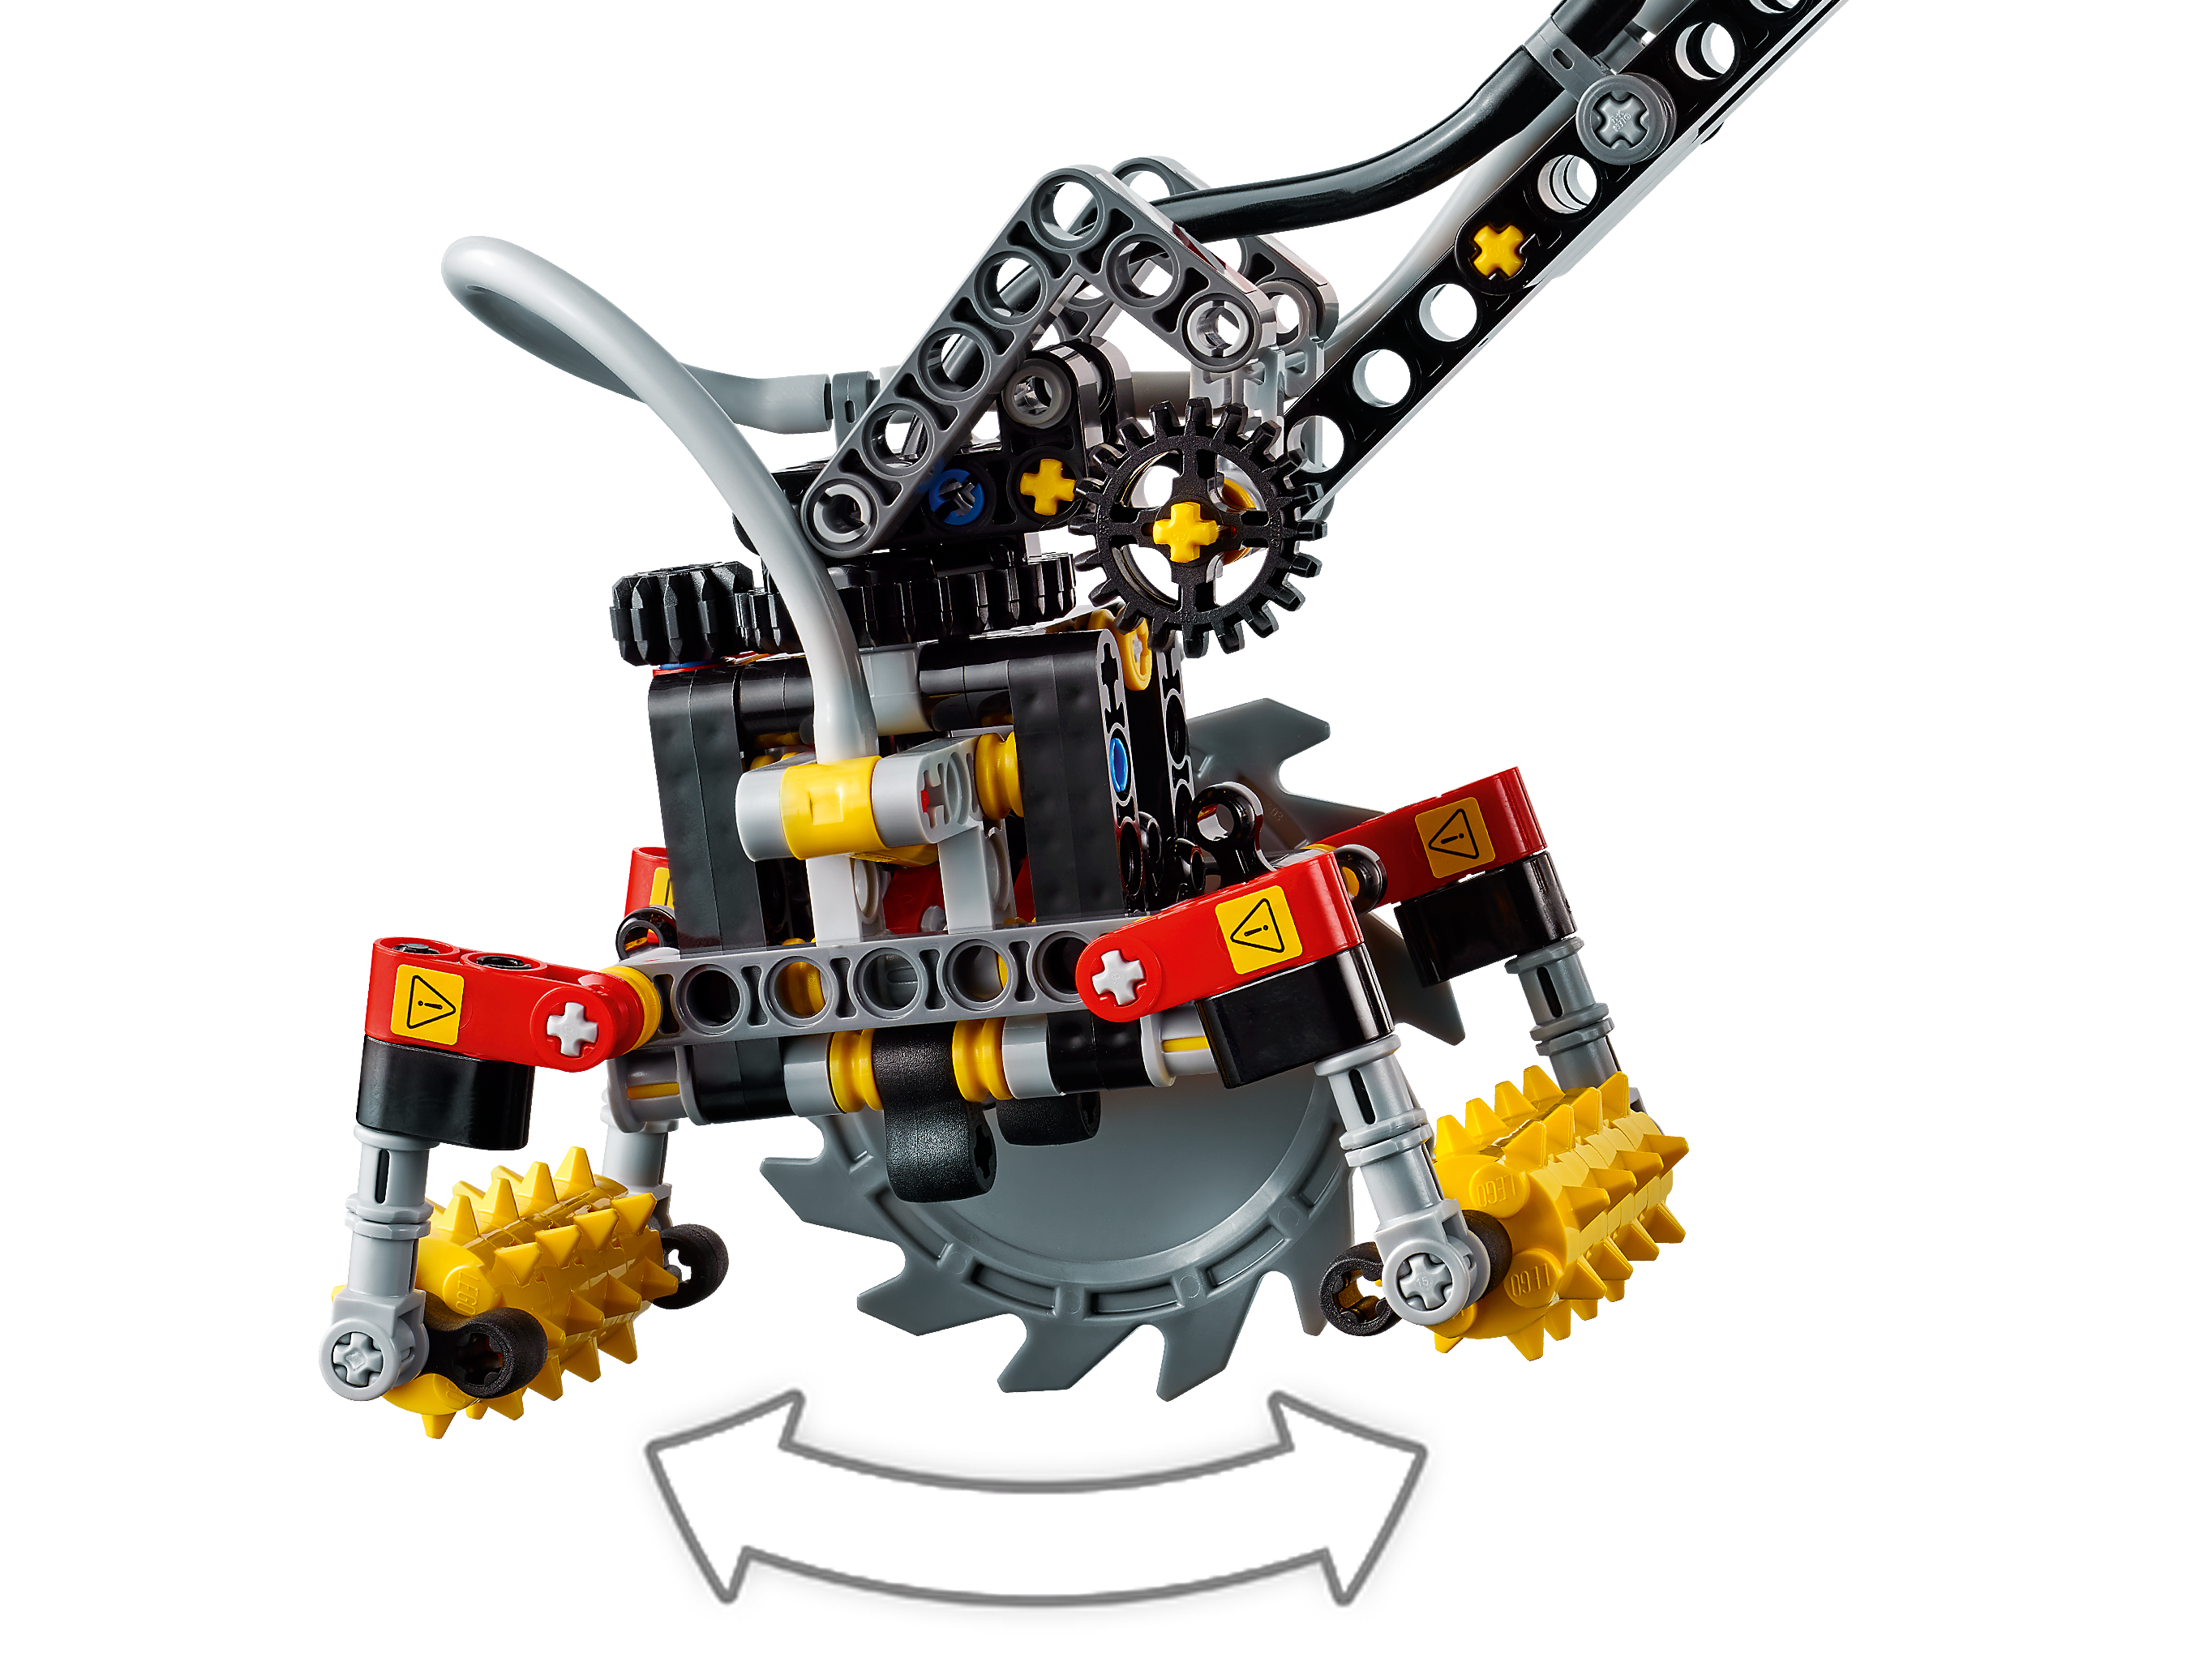 LEGO Technic 42080 Harvester-Forstmaschine Neu /& OVP